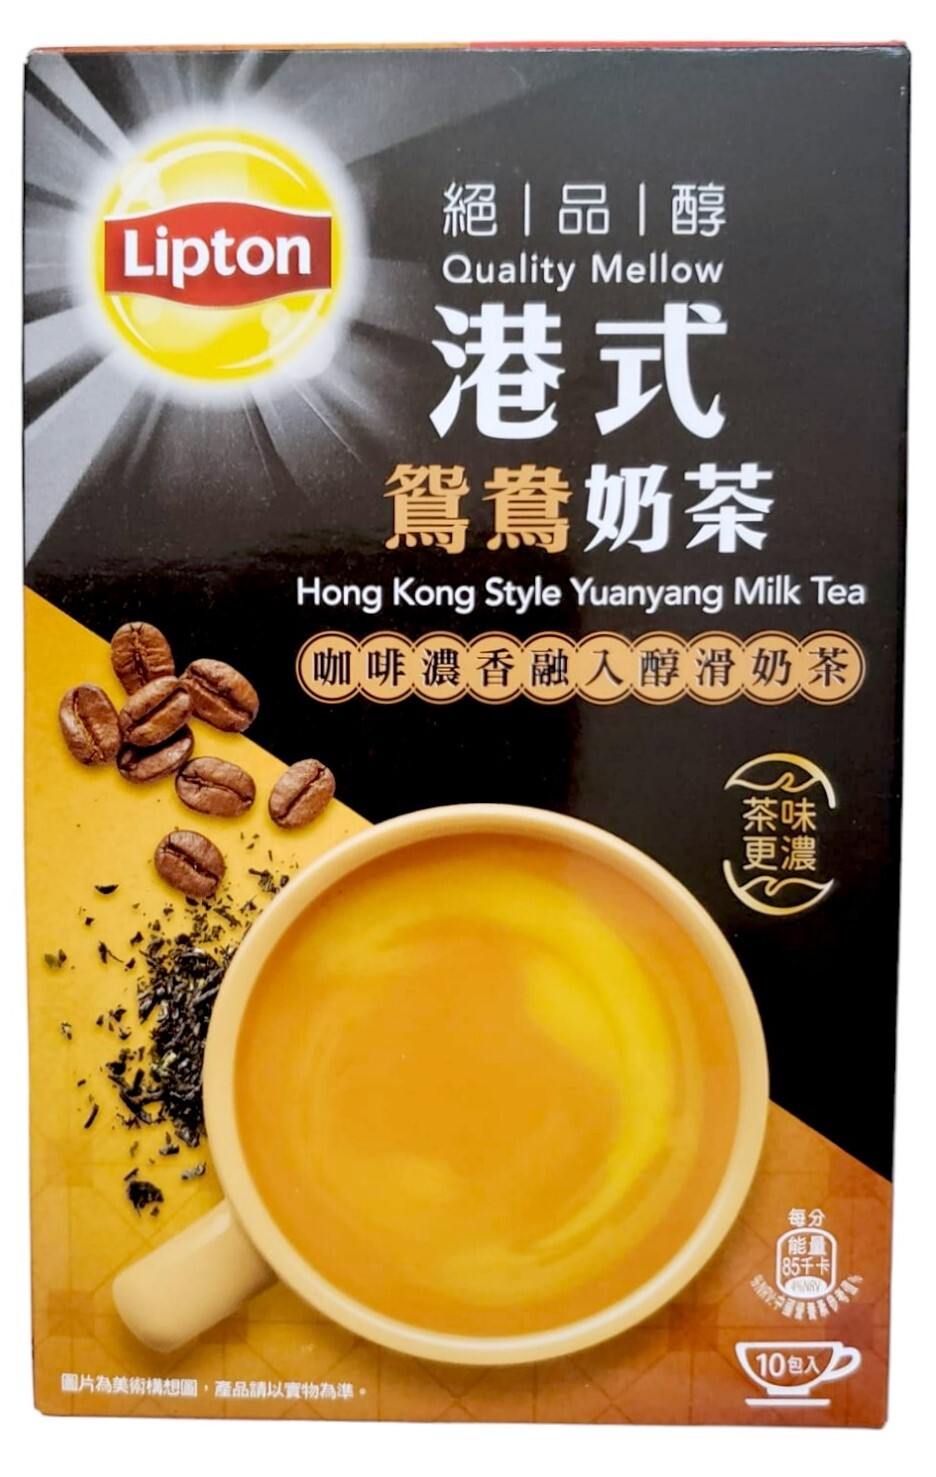 港式鴛鴦奶茶 (19克 x 10小包)